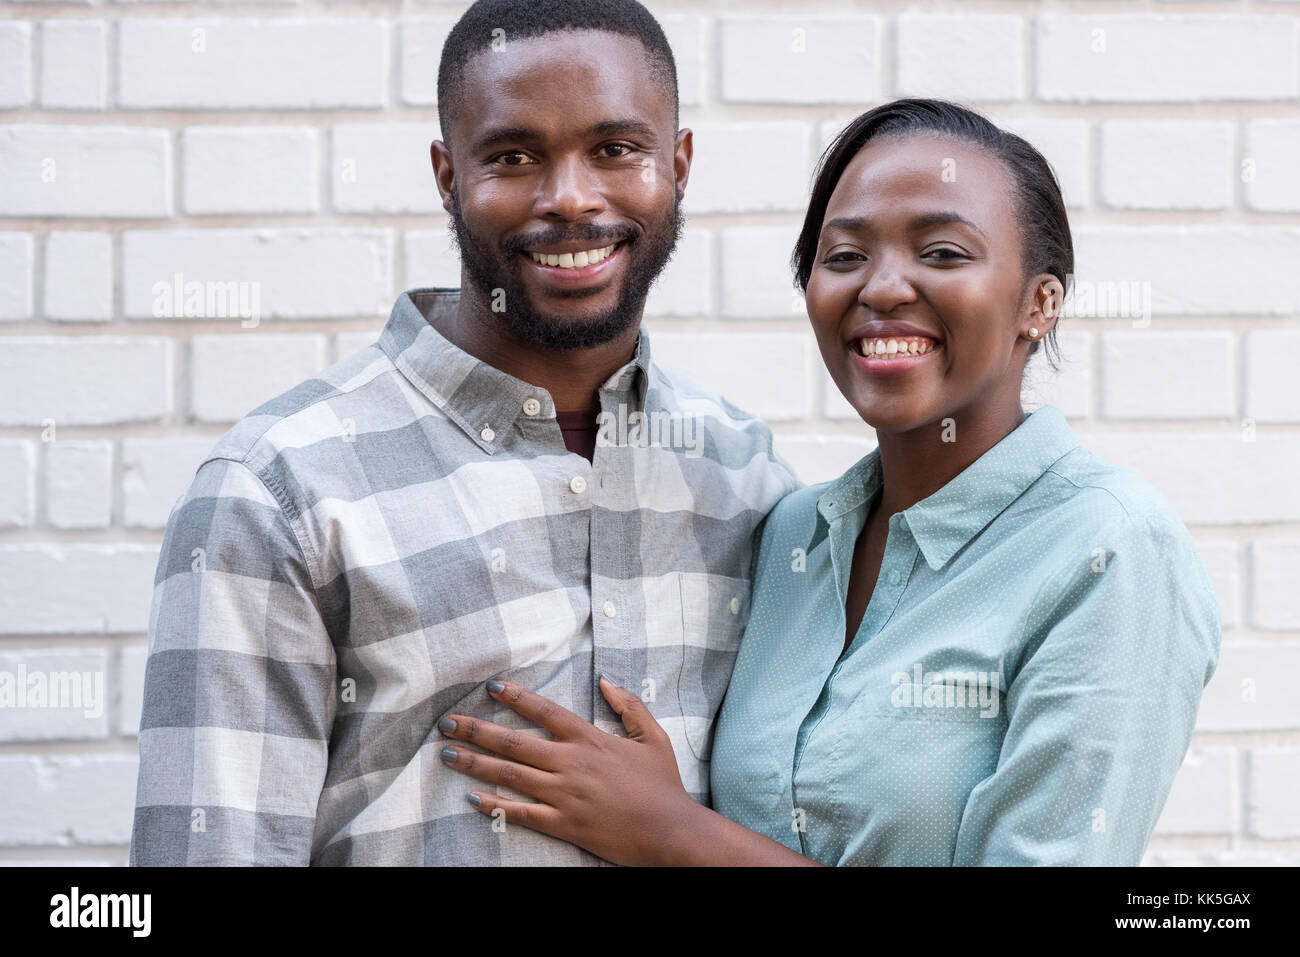 Smiling african couple dans la ville Banque D'Images